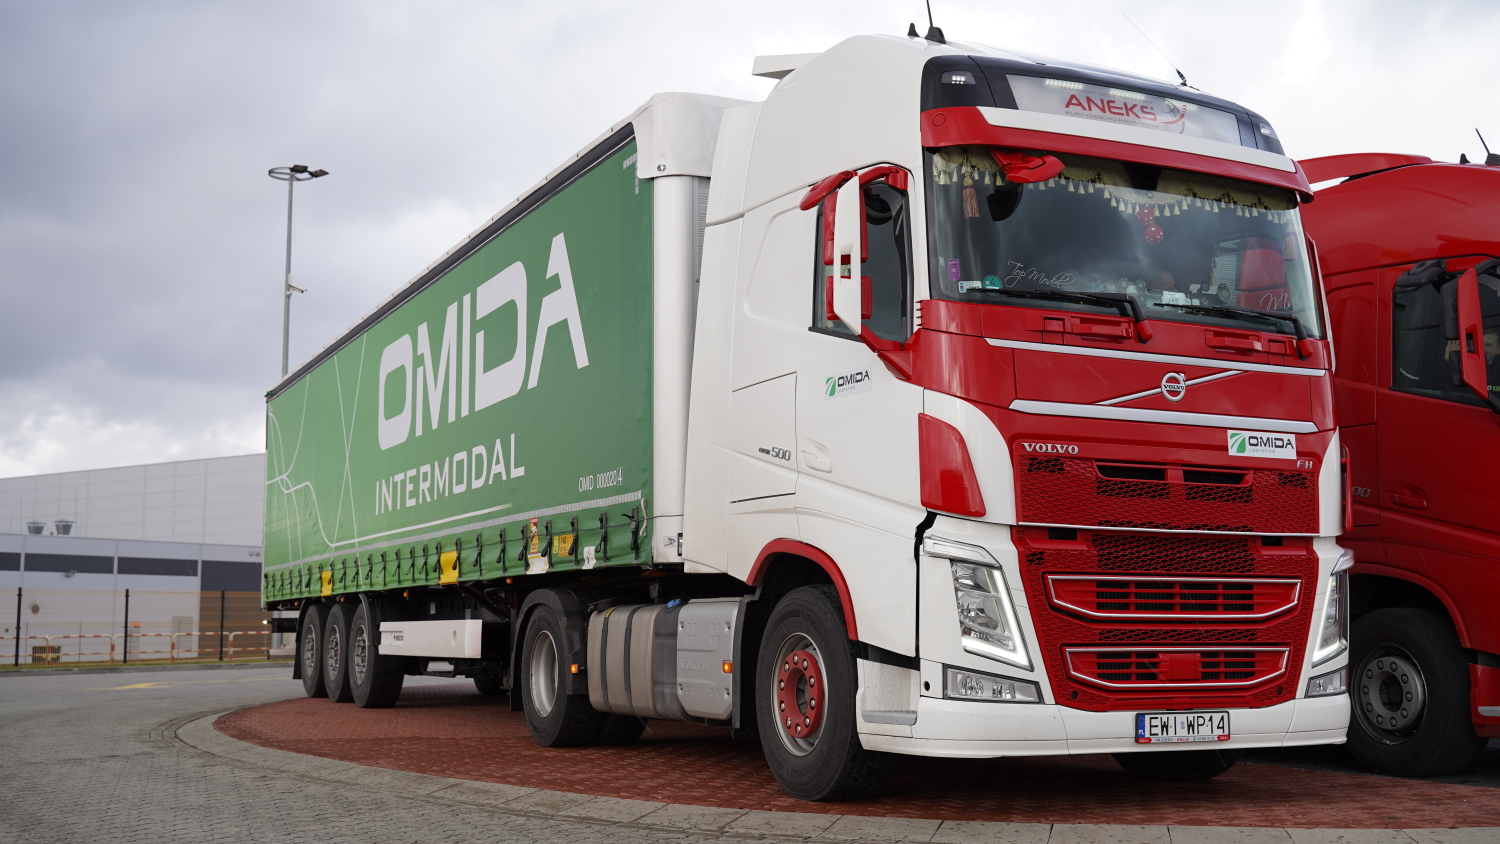 Firma Transportowa - dowiedz się czym zajmuje się firma transportowa. ✓ Transport Międzynarodowy ✓ Transport FTL ✓ Transport LTL | Omida Logistics